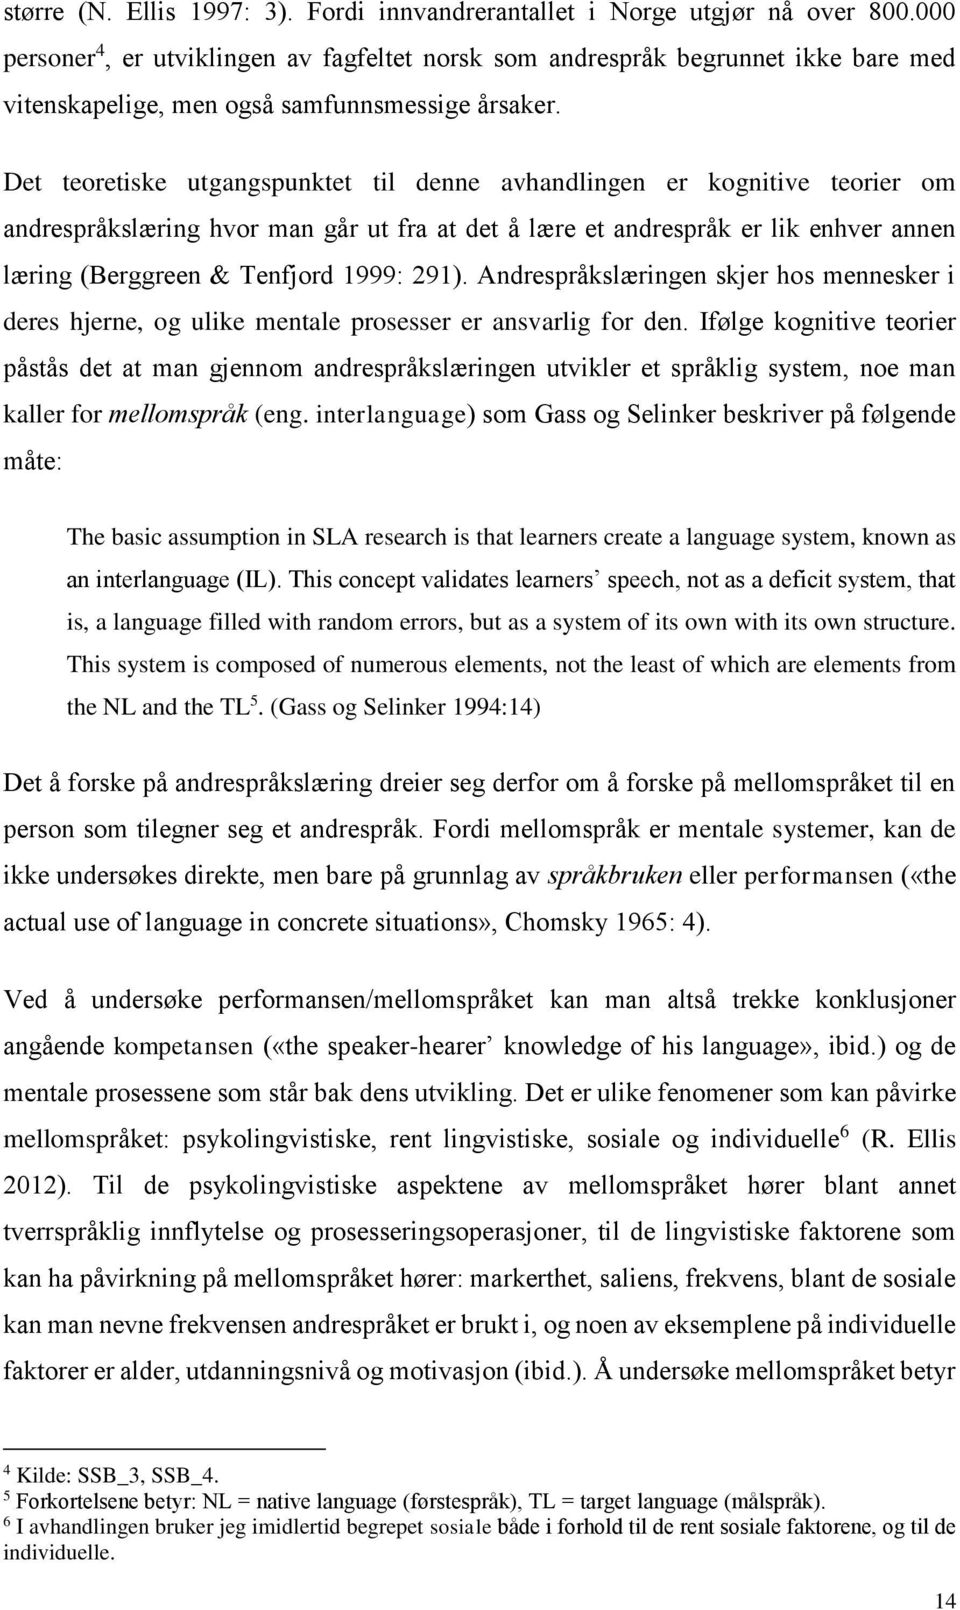 Det teoretiske utgangspunktet til denne avhandlingen er kognitive teorier om andrespråkslæring hvor man går ut fra at det å lære et andrespråk er lik enhver annen læring (Berggreen & Tenfjord 1999: